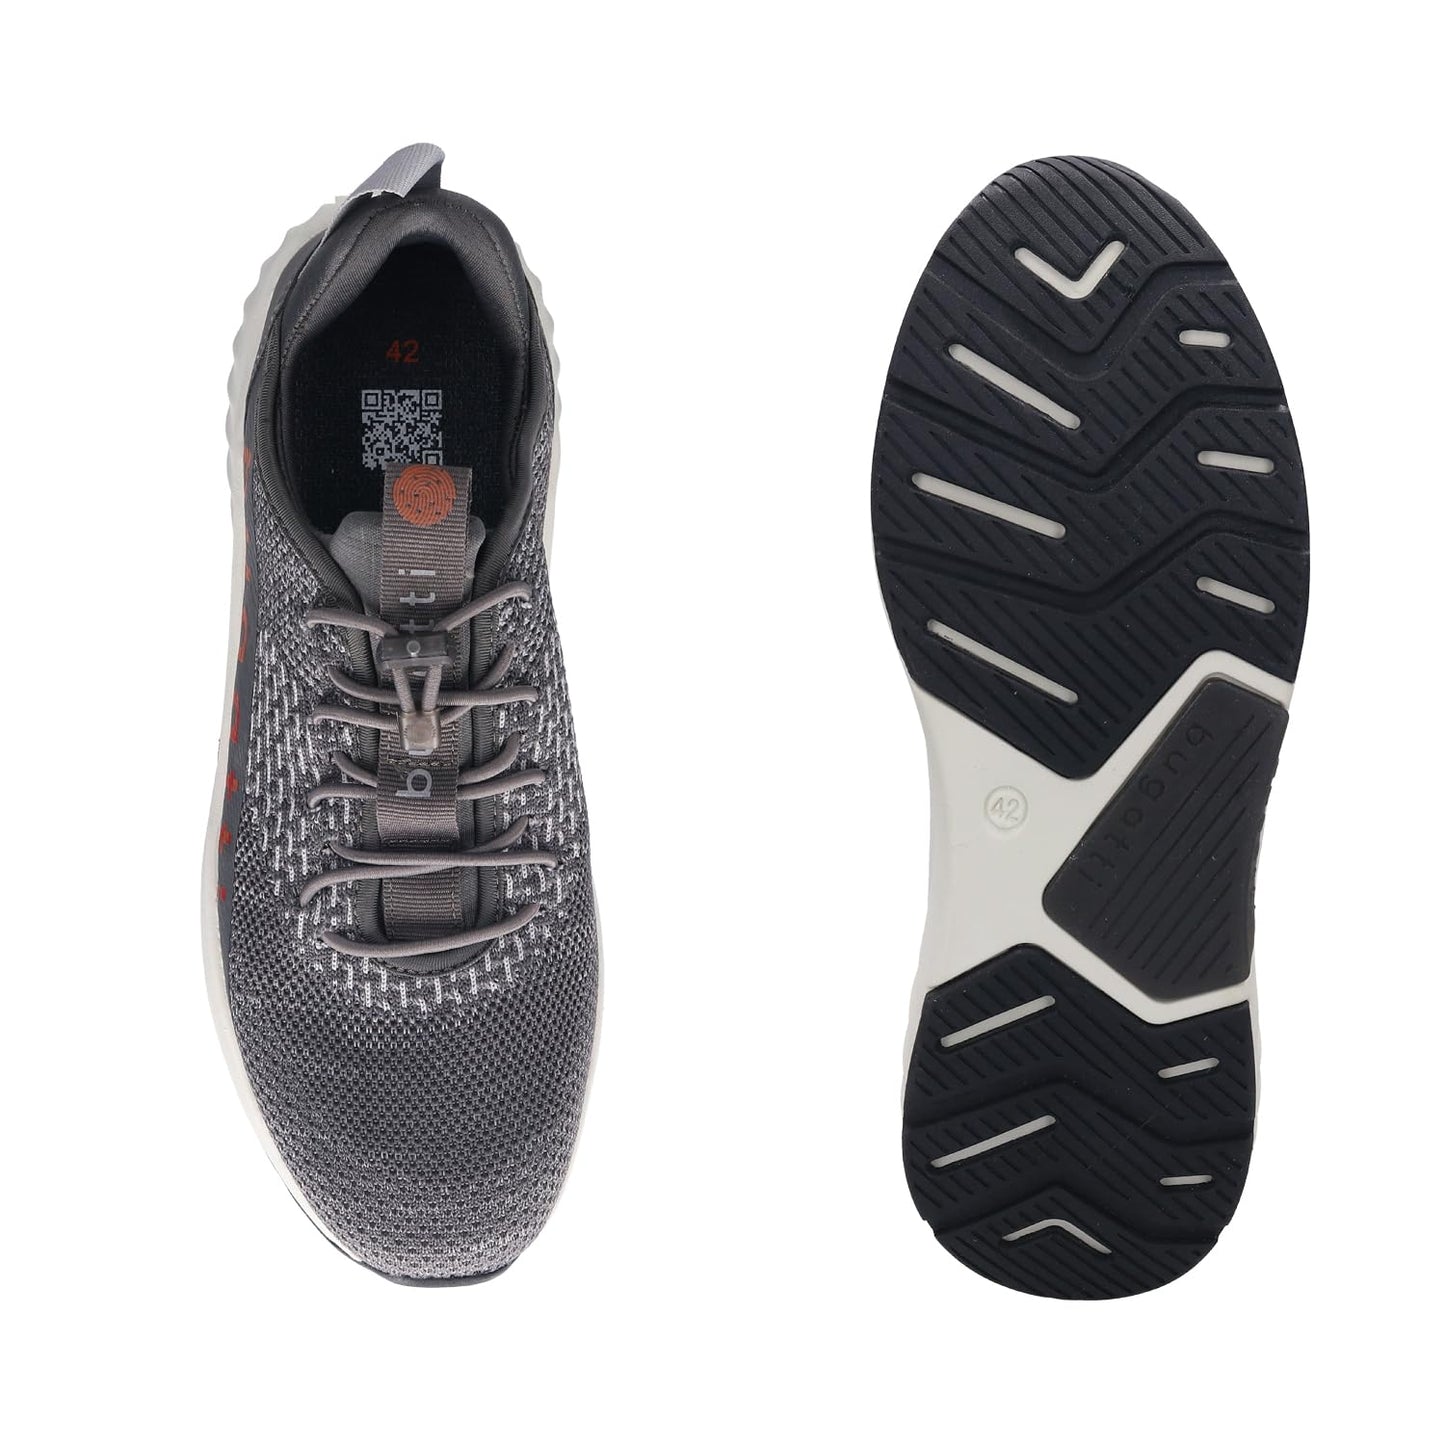 Bugatti Nirvana Exko Dark Grey Men Textile Athileisure Sports Shoes UK-10 